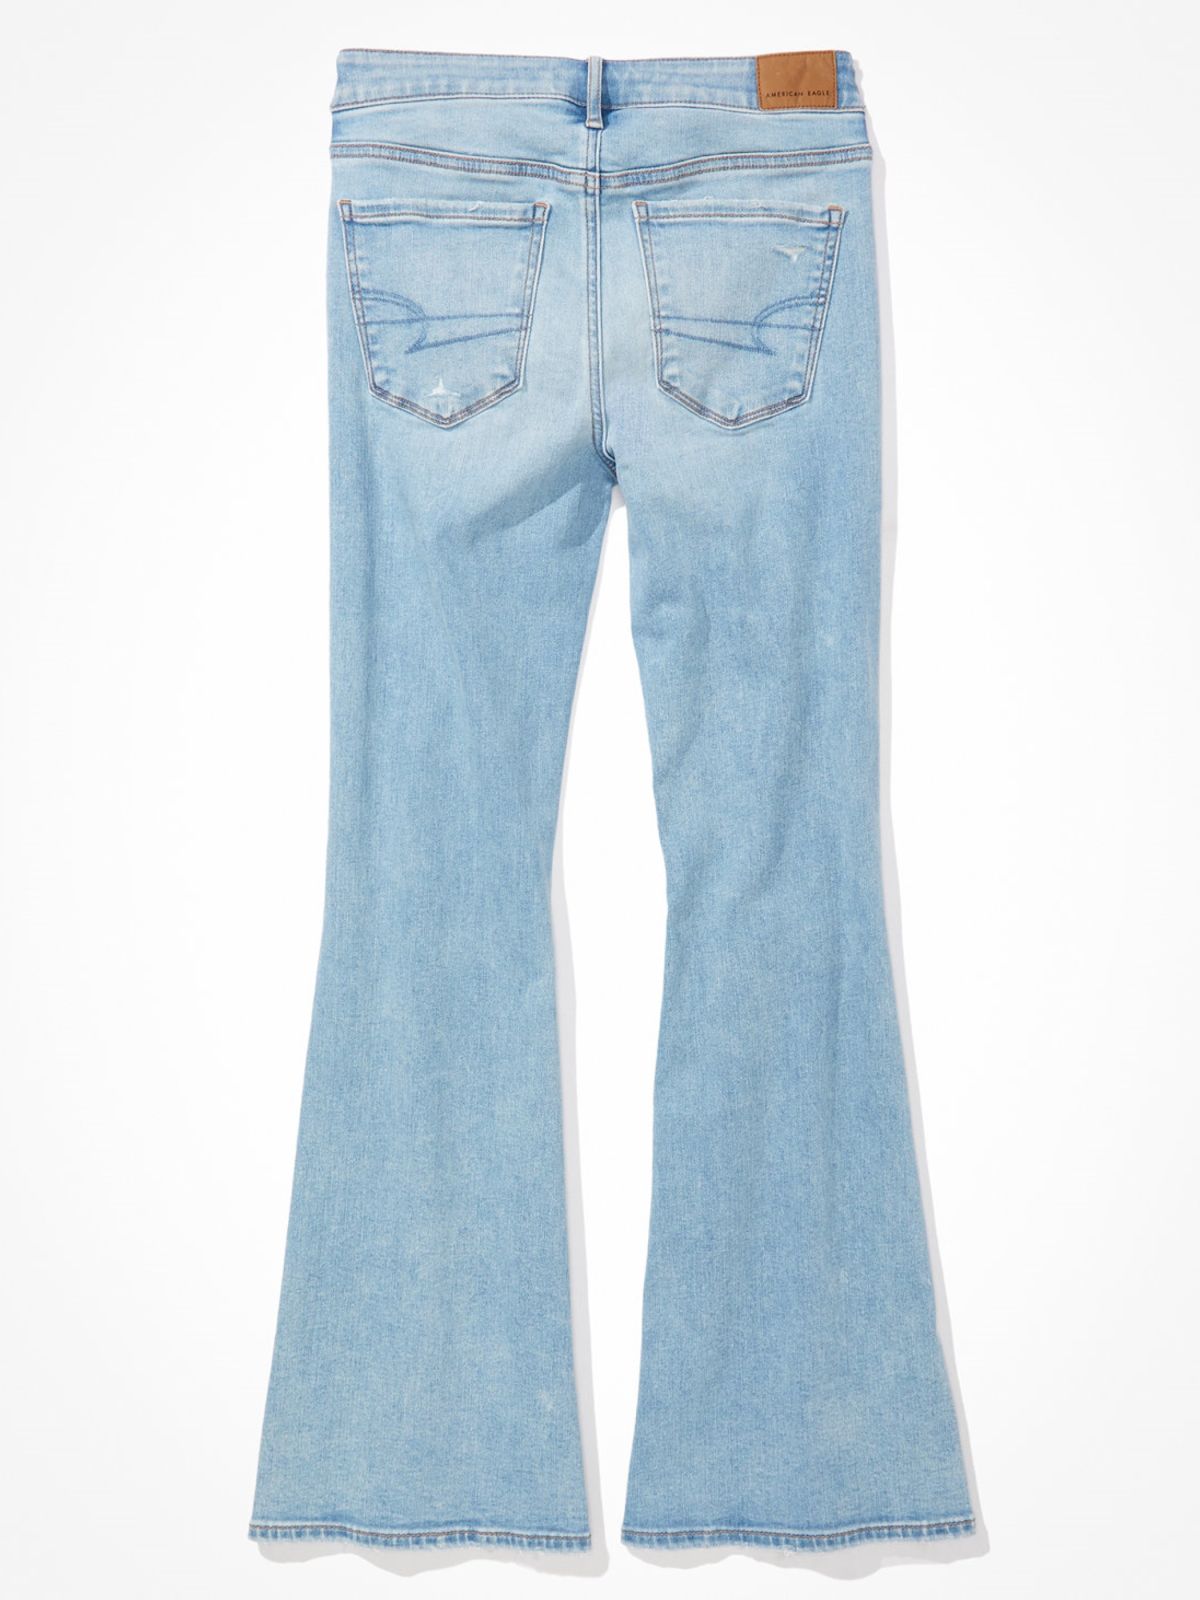  ג'ינס ארוך עם קרע בגזרת FLARE / נשים של AMERICAN EAGLE